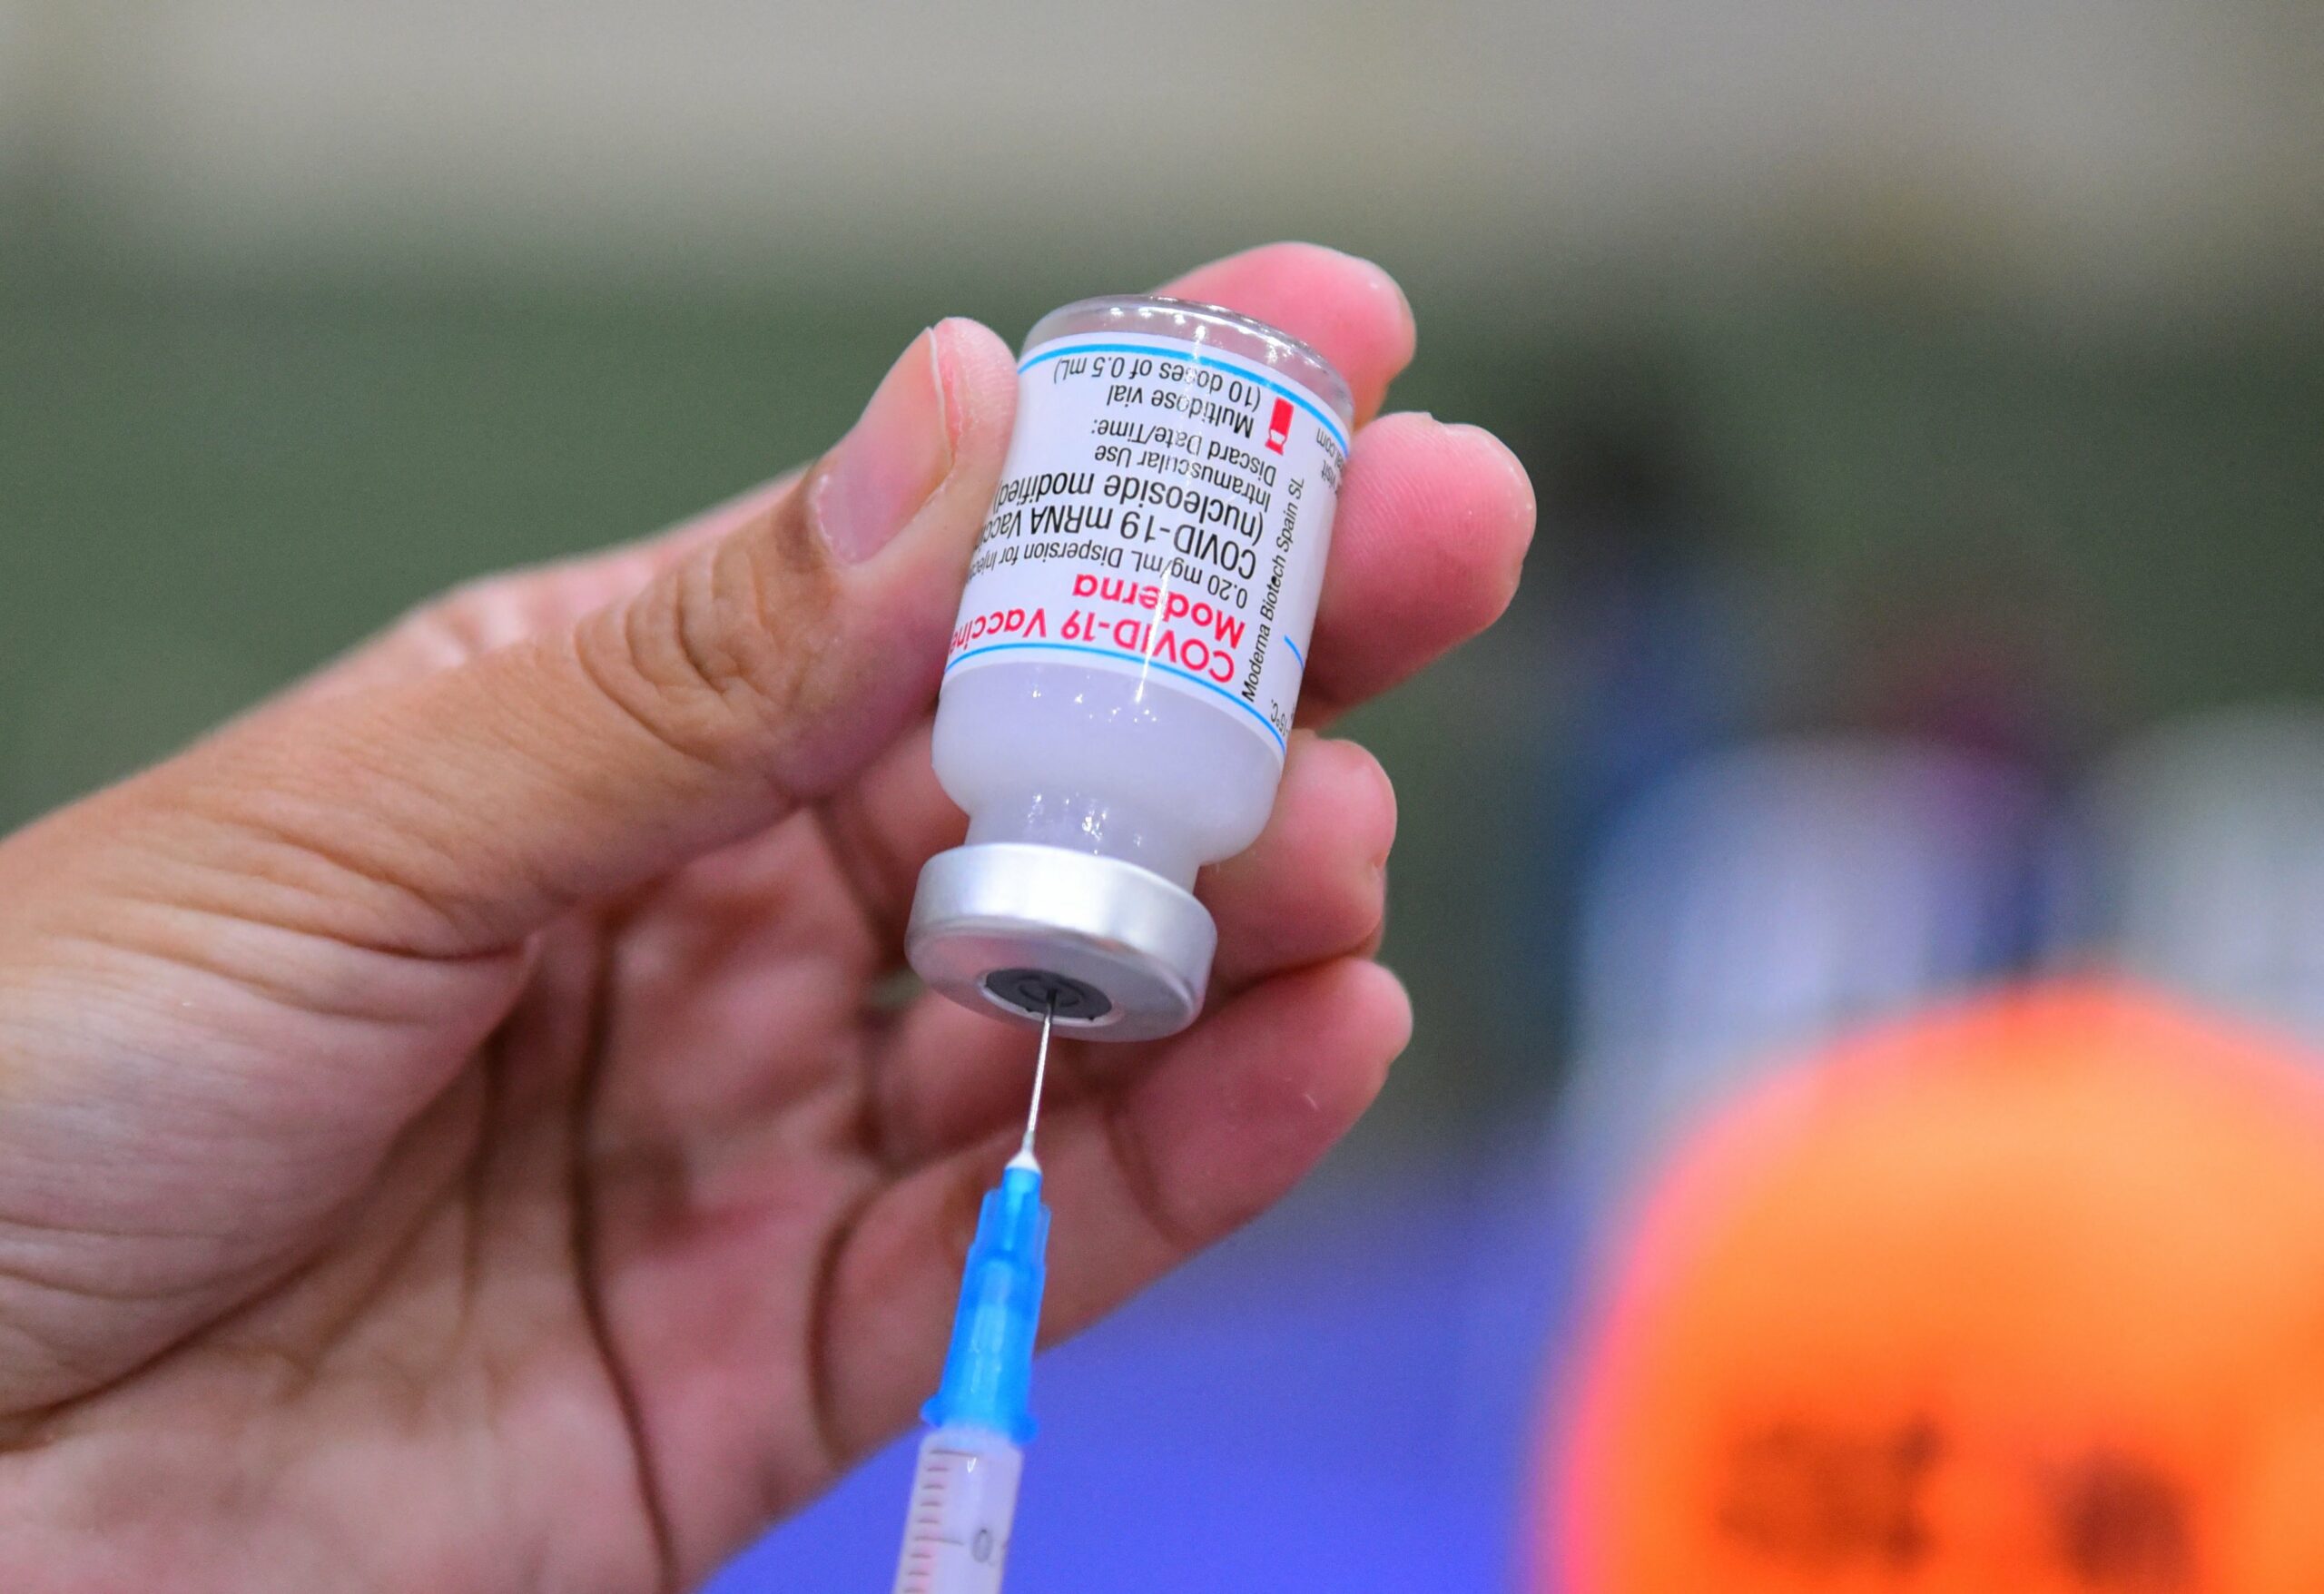 ฉีดวัคซีนโมเดอร์นา ต้องเว้นห่างจากวัคซีนยี่ห้ออื่นกี่เดือน ? – ธุรกิจ